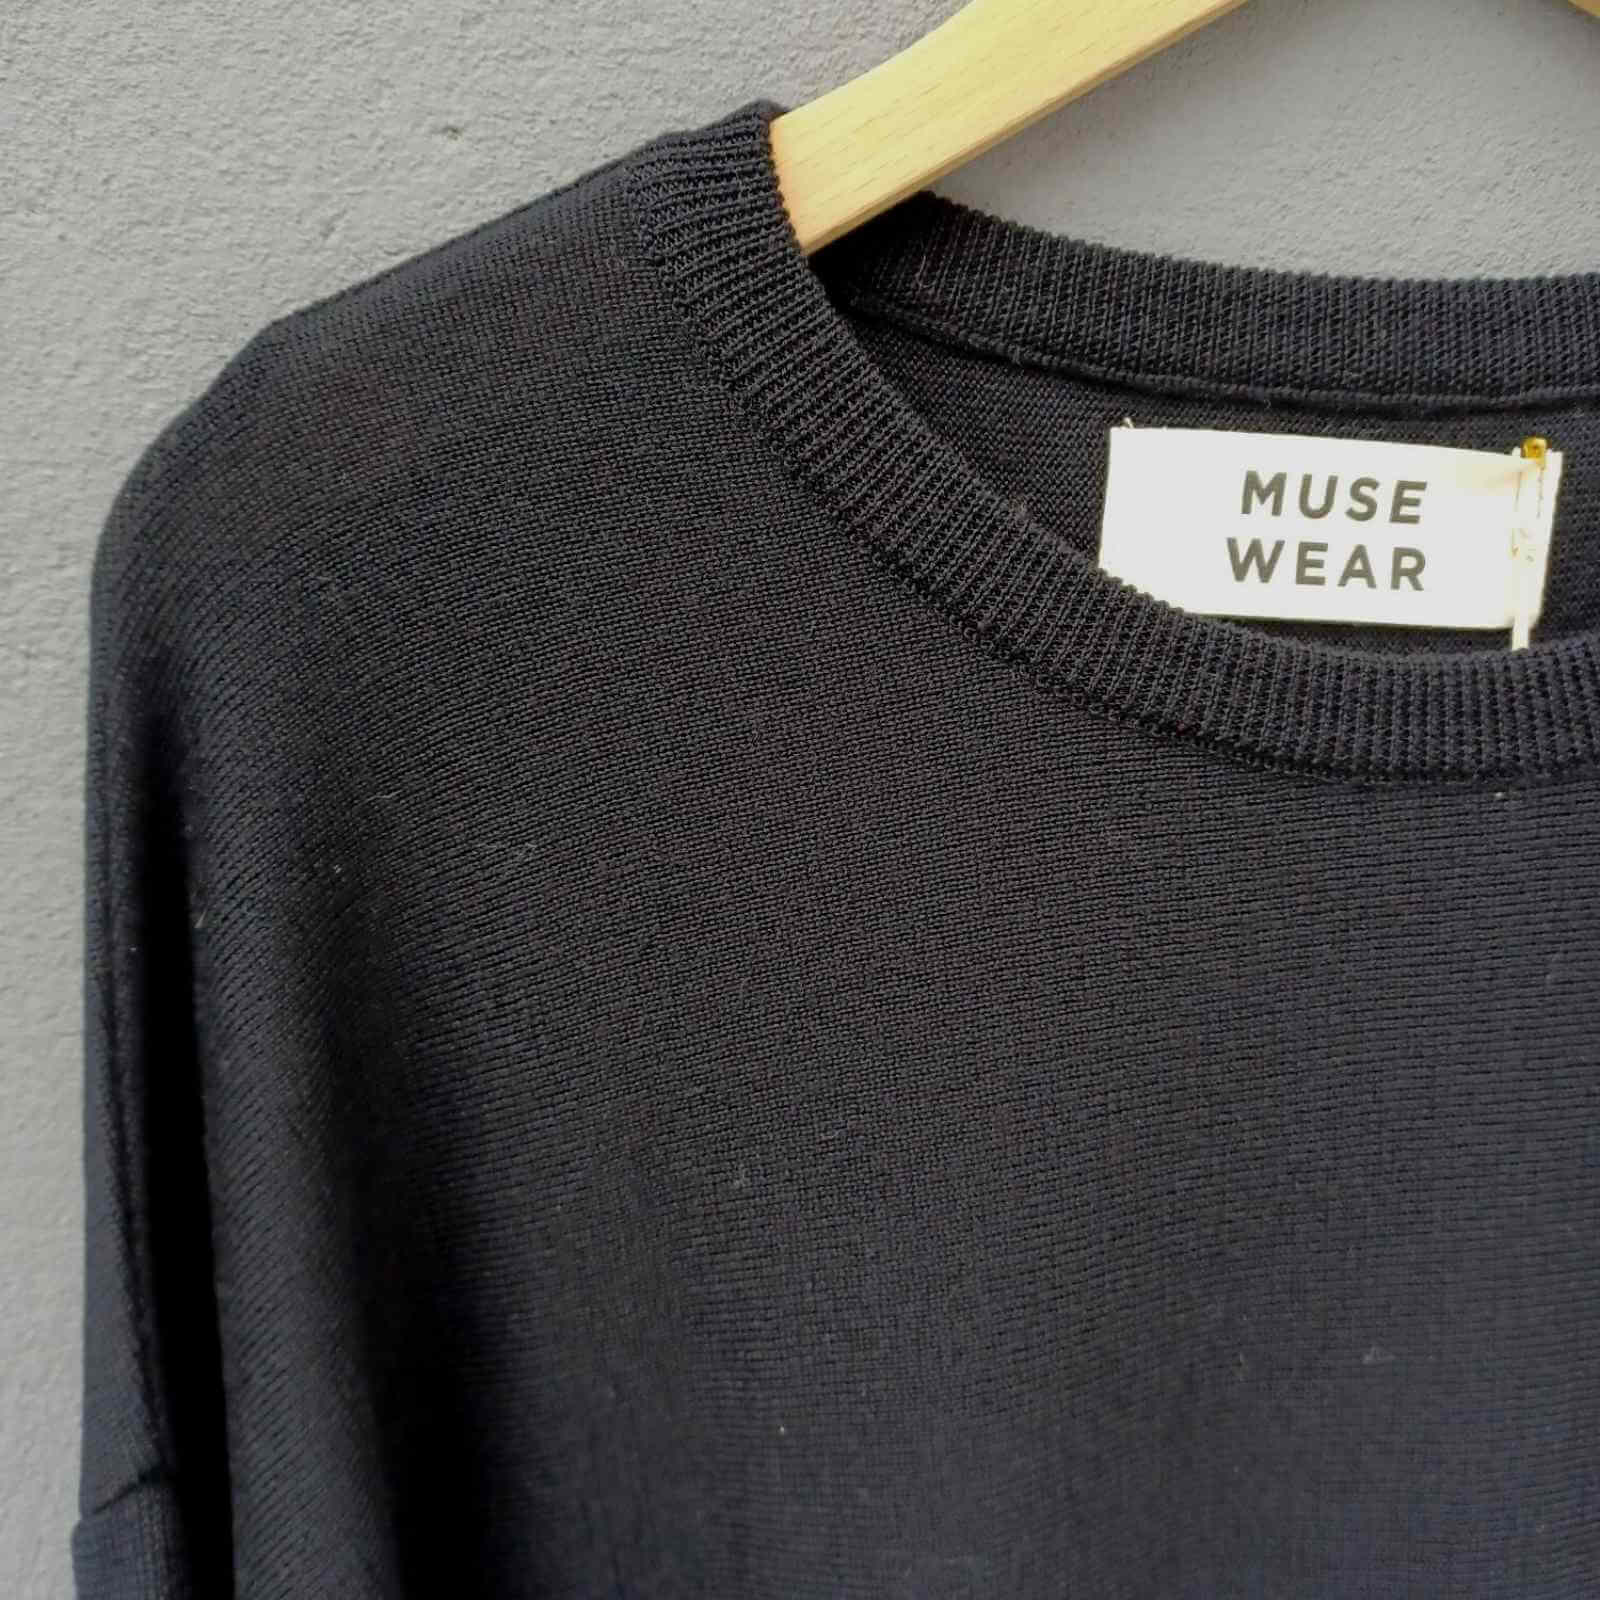 Sort uld tunika hals detalje fra Muse Wear